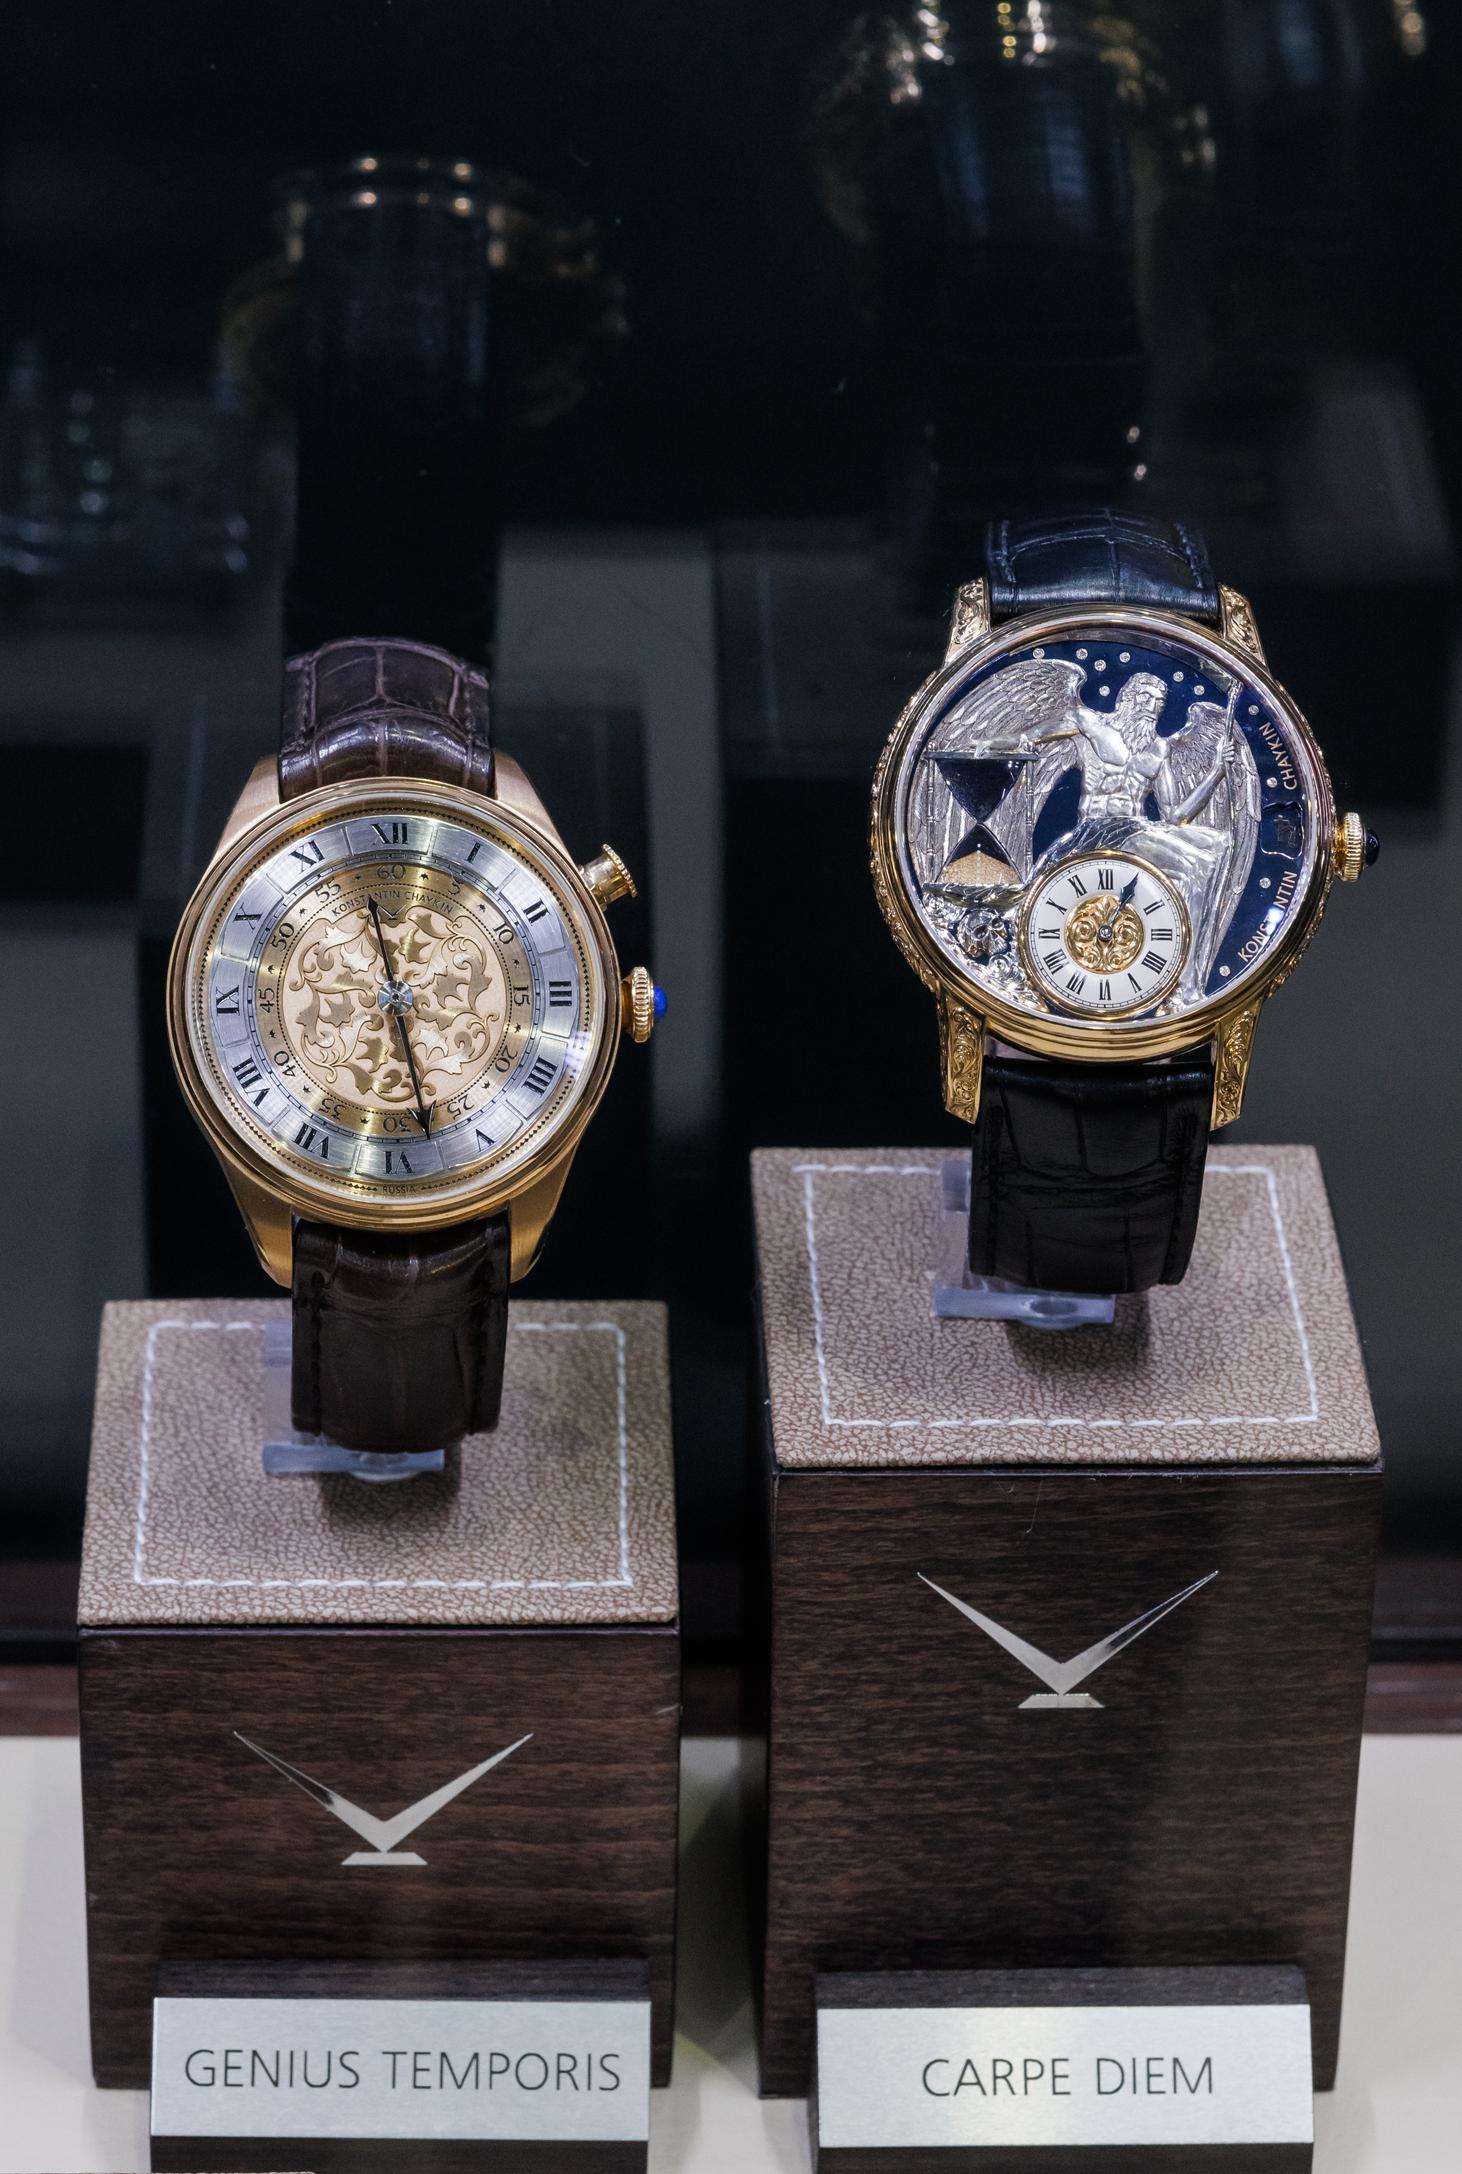 Часы&nbsp;Genius Temporis с одной стрелкой отсылают к карманным часам&nbsp;XVI века. На циферблате модели&nbsp;Capre Diem можно заметить&nbsp;индикатор, имитирующий работу песочных часов, отмеряющий 10-минутный отрезок времени